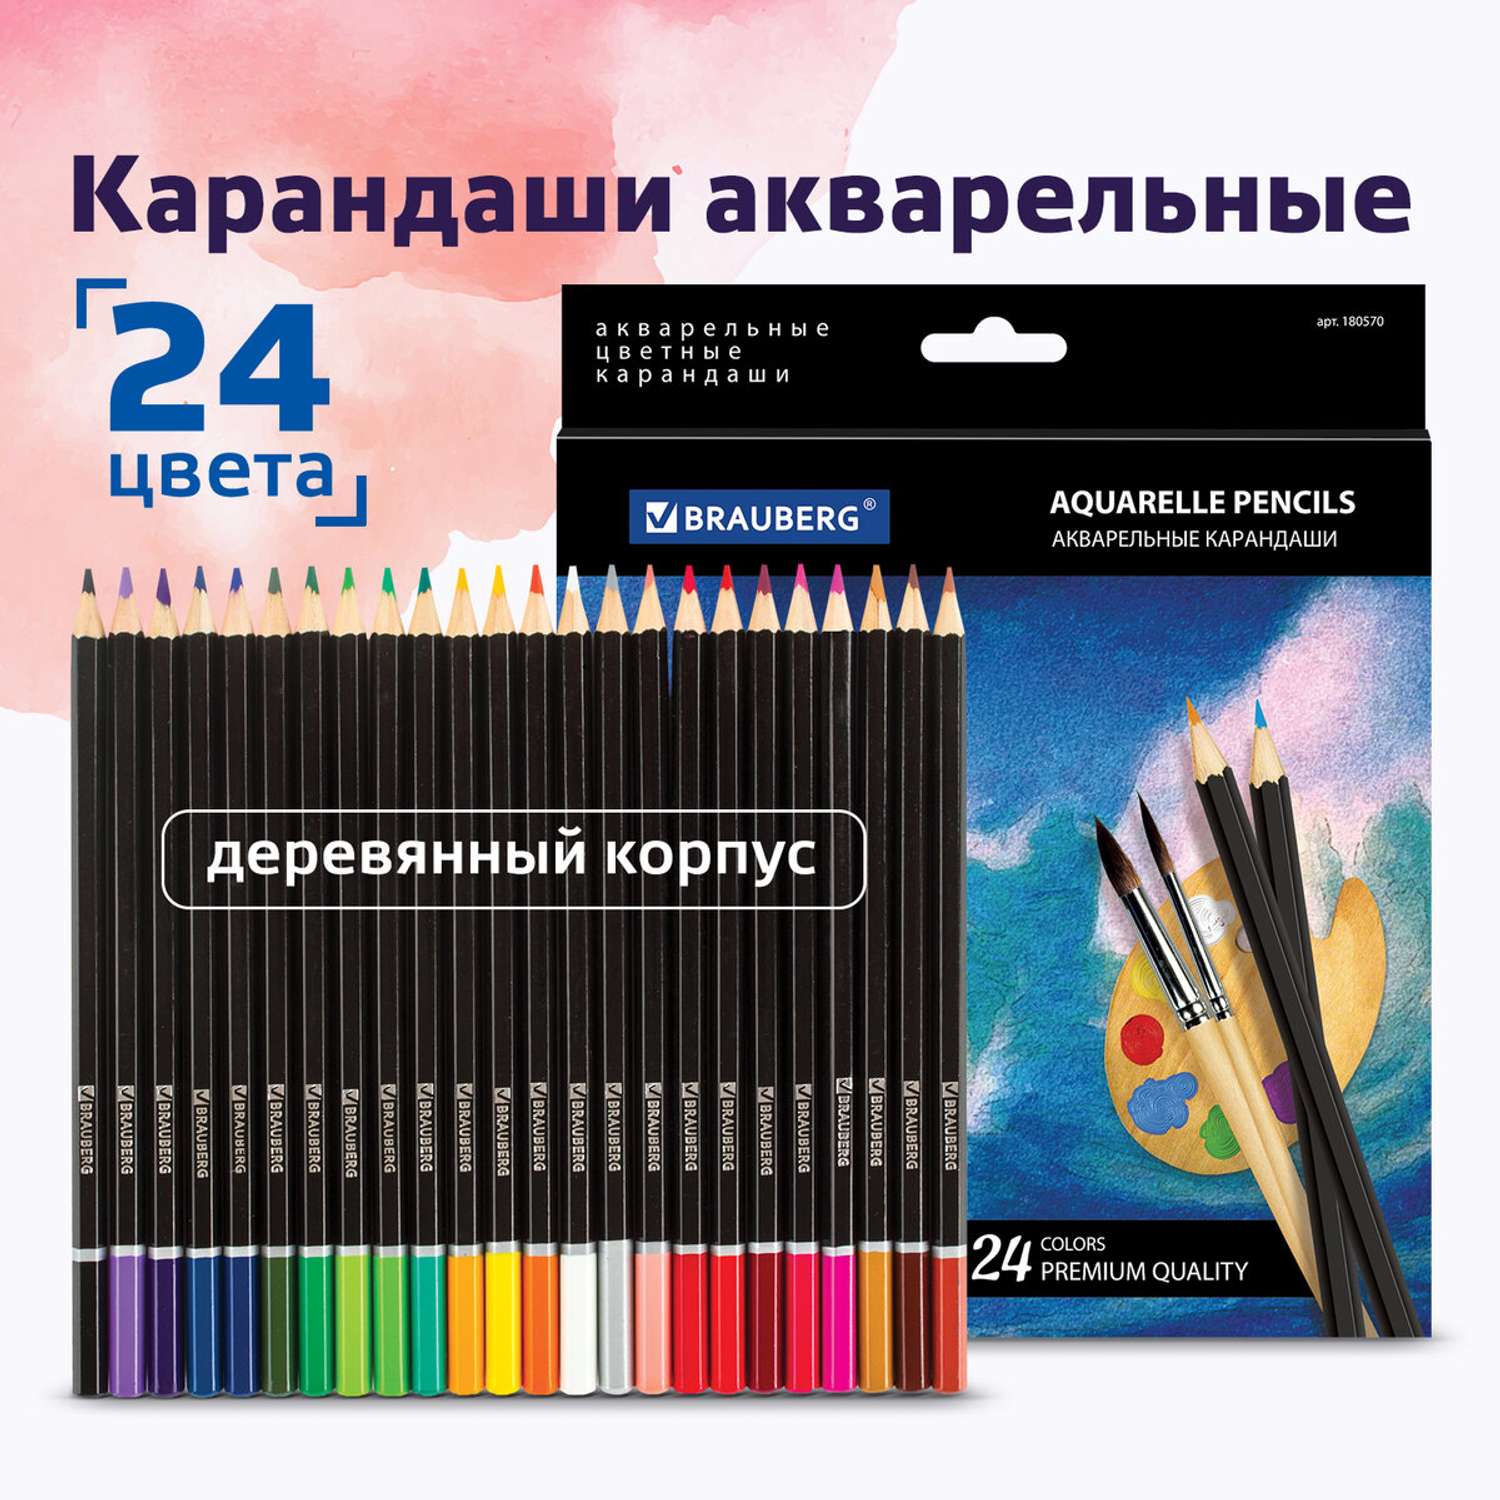 Карандаши цветные Brauberg акварельные Artist line 24 цвета высшее качество - фото 1